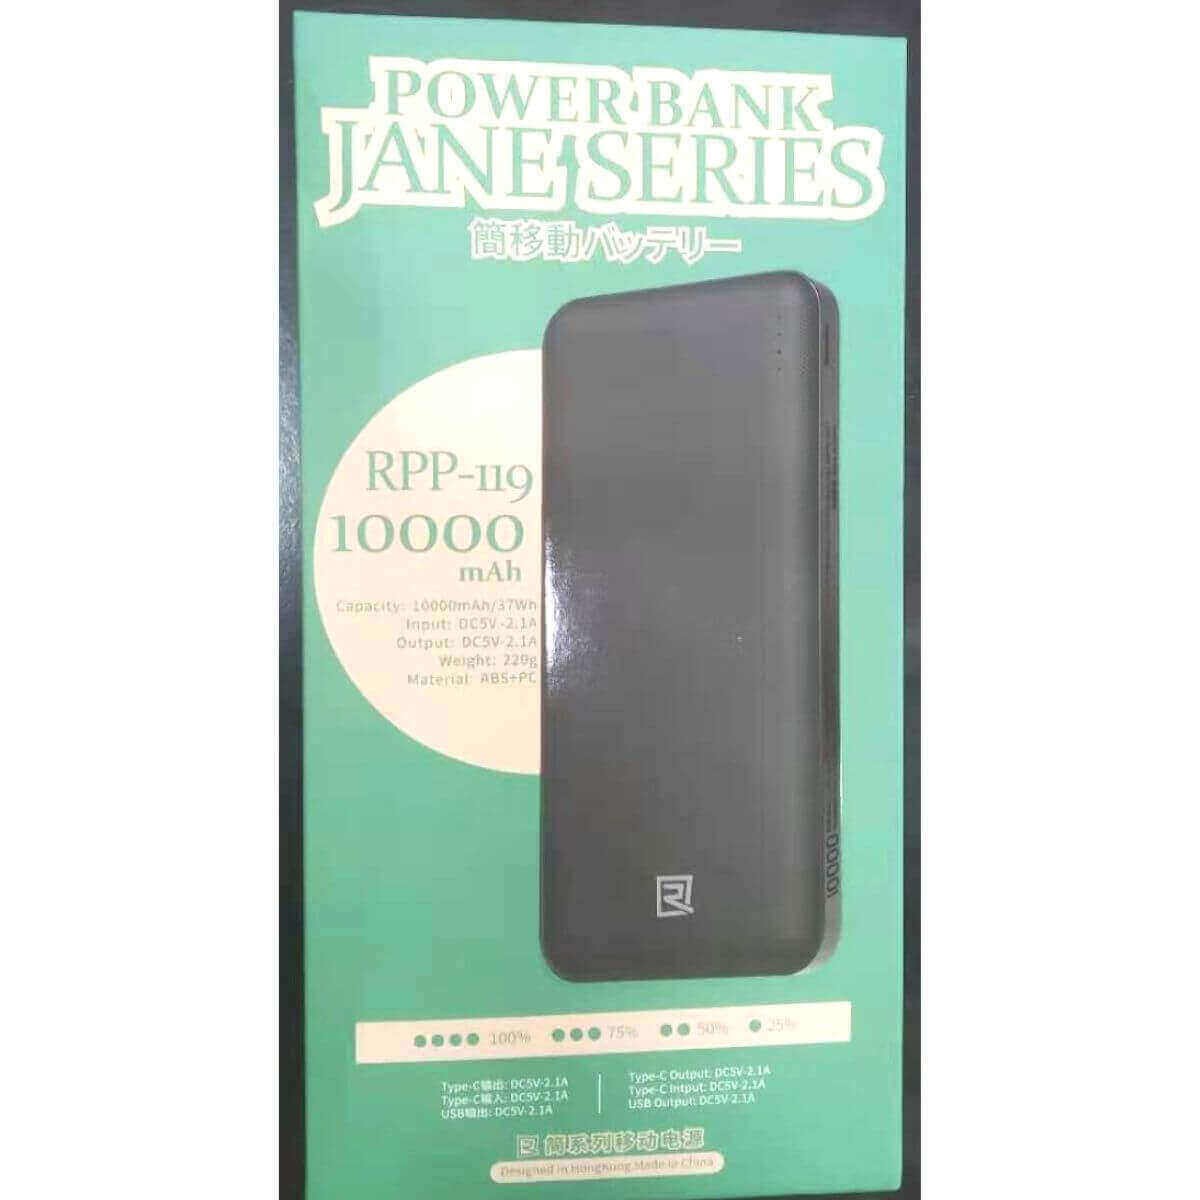 Jane Series Remax Original PowerBank 10000MAH RPP-...... BD